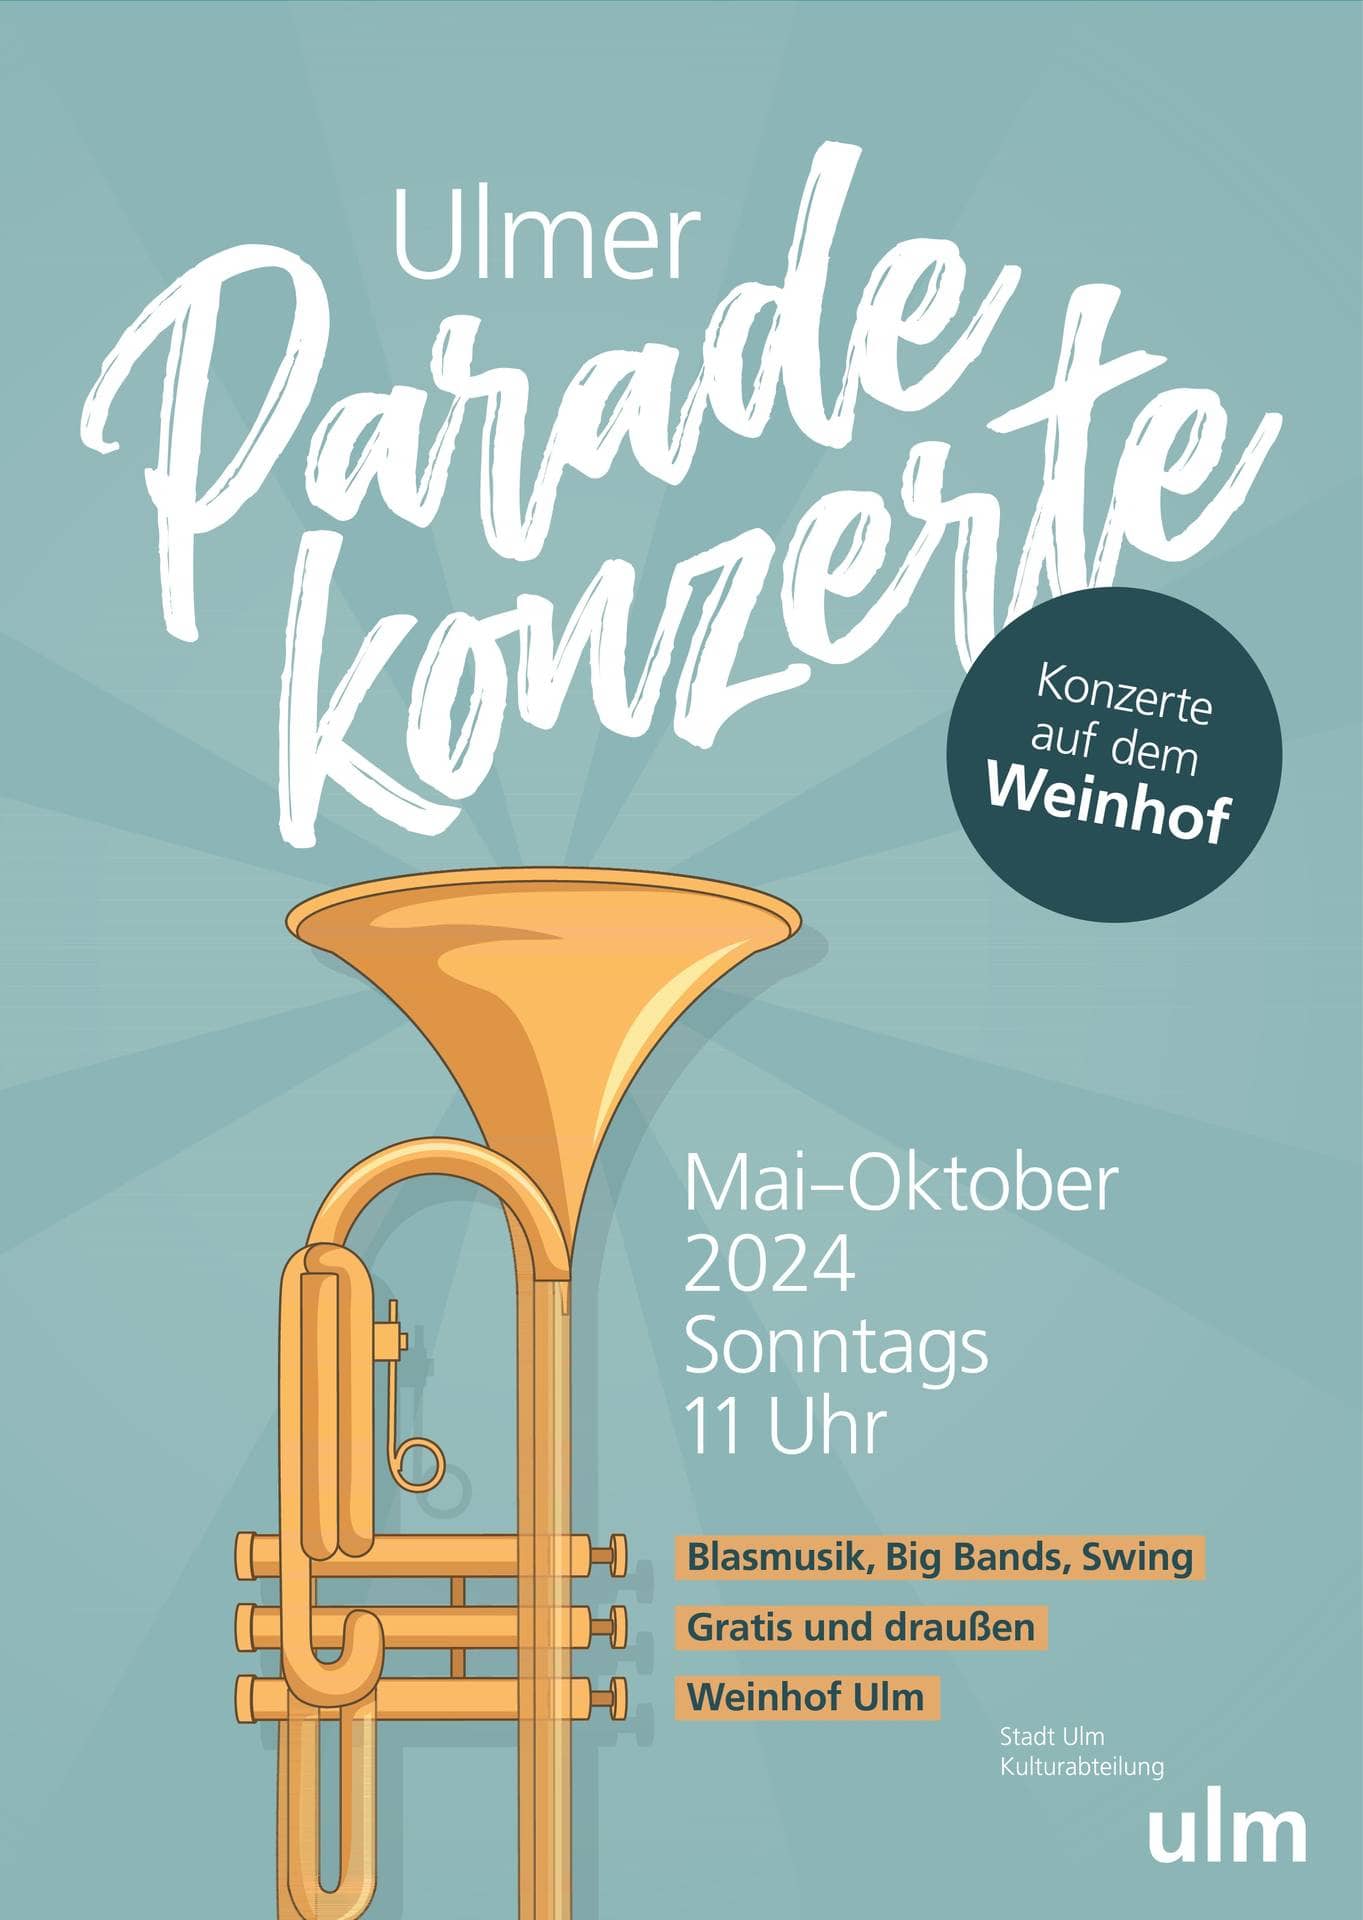 Plakat der Ulmer Paradekonzerte 2024 mit dem Hinweis: Konzerte auf dem Weinhof